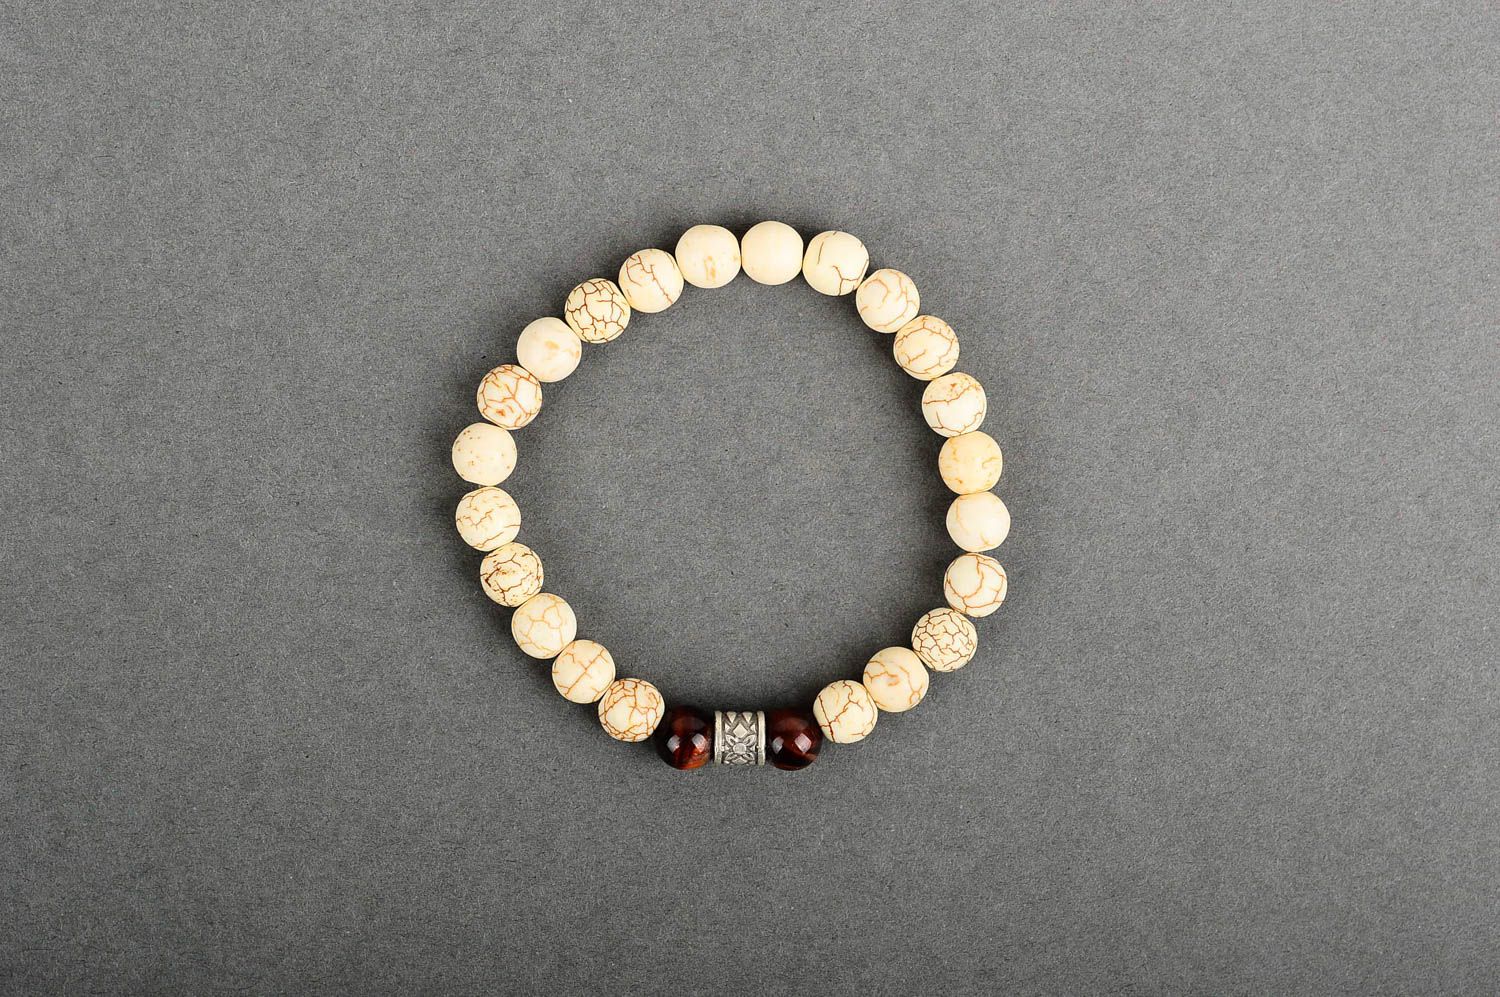 Naturstein Schmuck handmade Geschenk für Frauen schönes Damen Armband zart foto 1